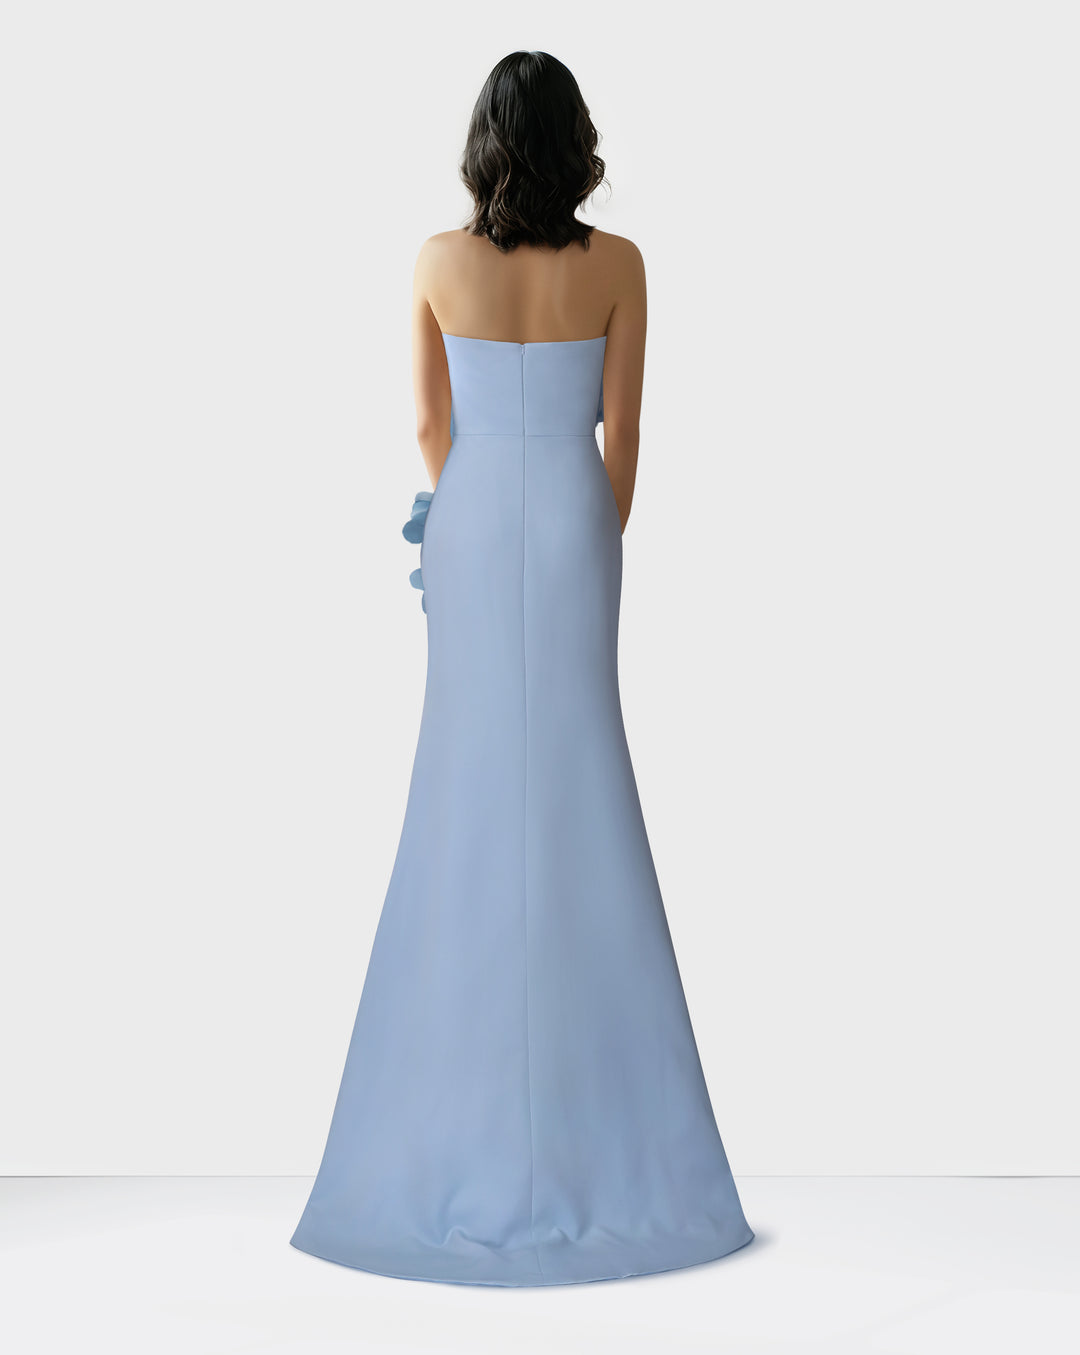 Strapless sky blue dress with 3d flowers -ODD-Zhavia